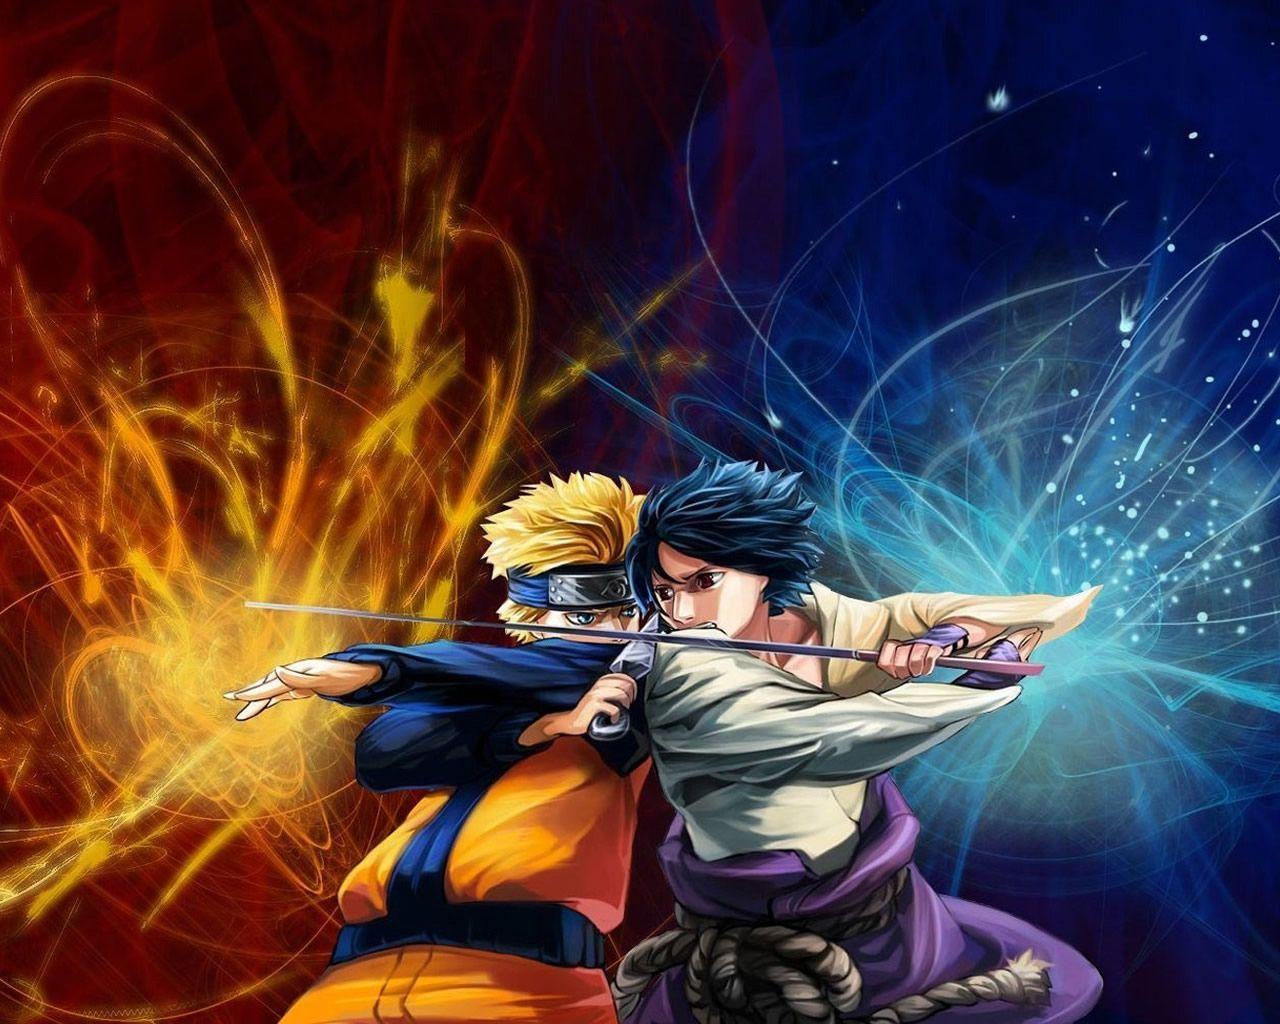 Naruto Vs Sasuke Wallpaper 1280×1024 0207. Anime Gaming SciFi